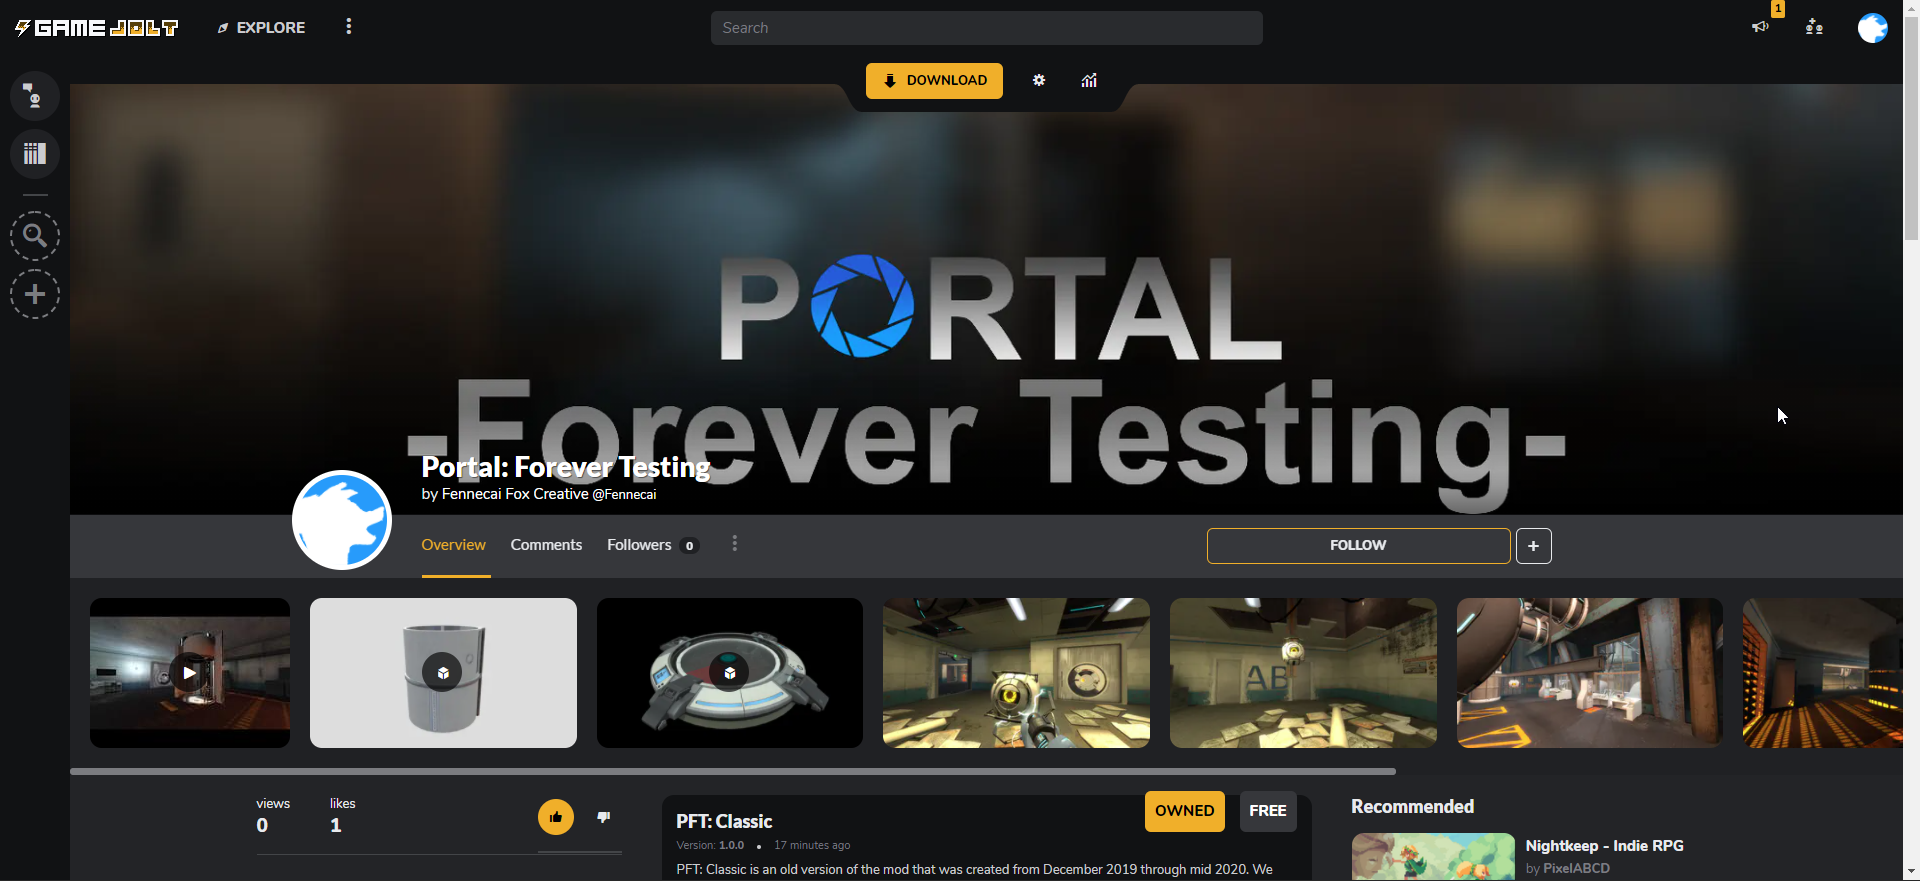 Portal: Forever Testing gamejolt page